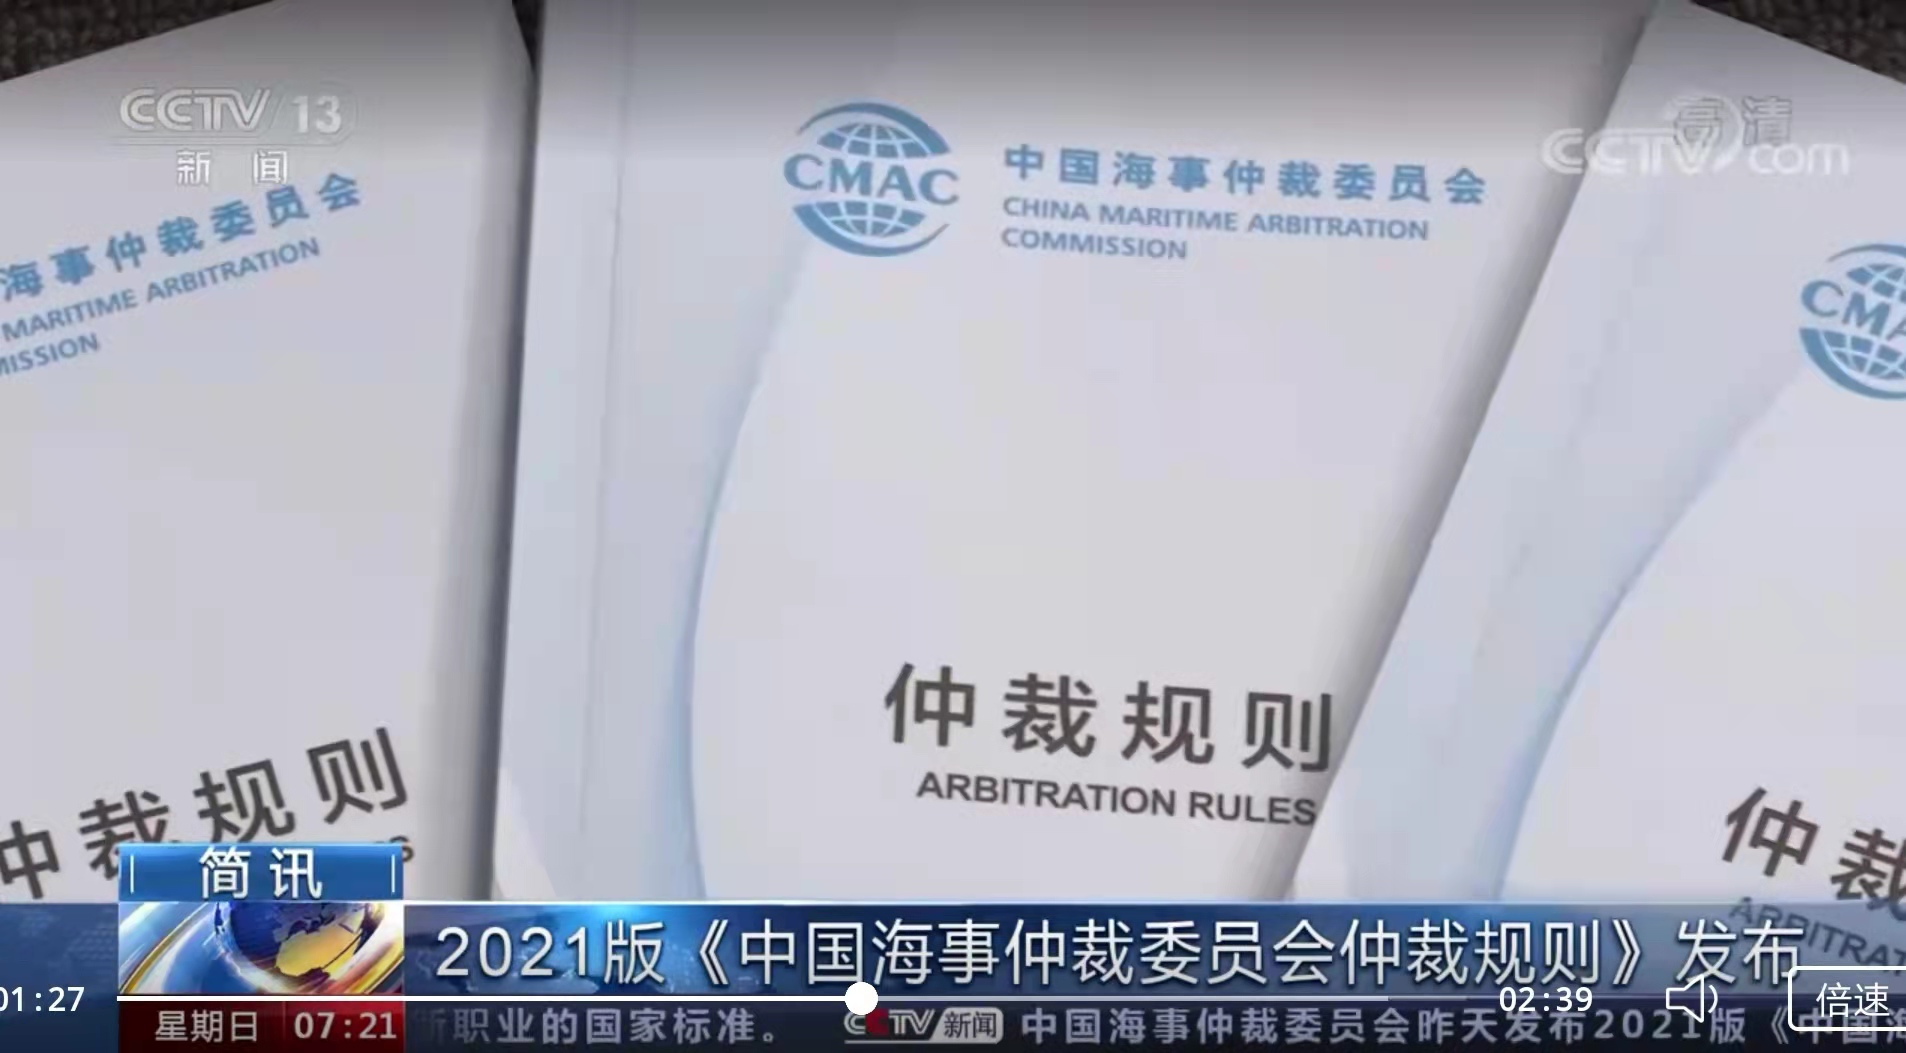 【中央电视台-朝闻天下】2021版《中国海事仲裁委员会仲裁规则》发布